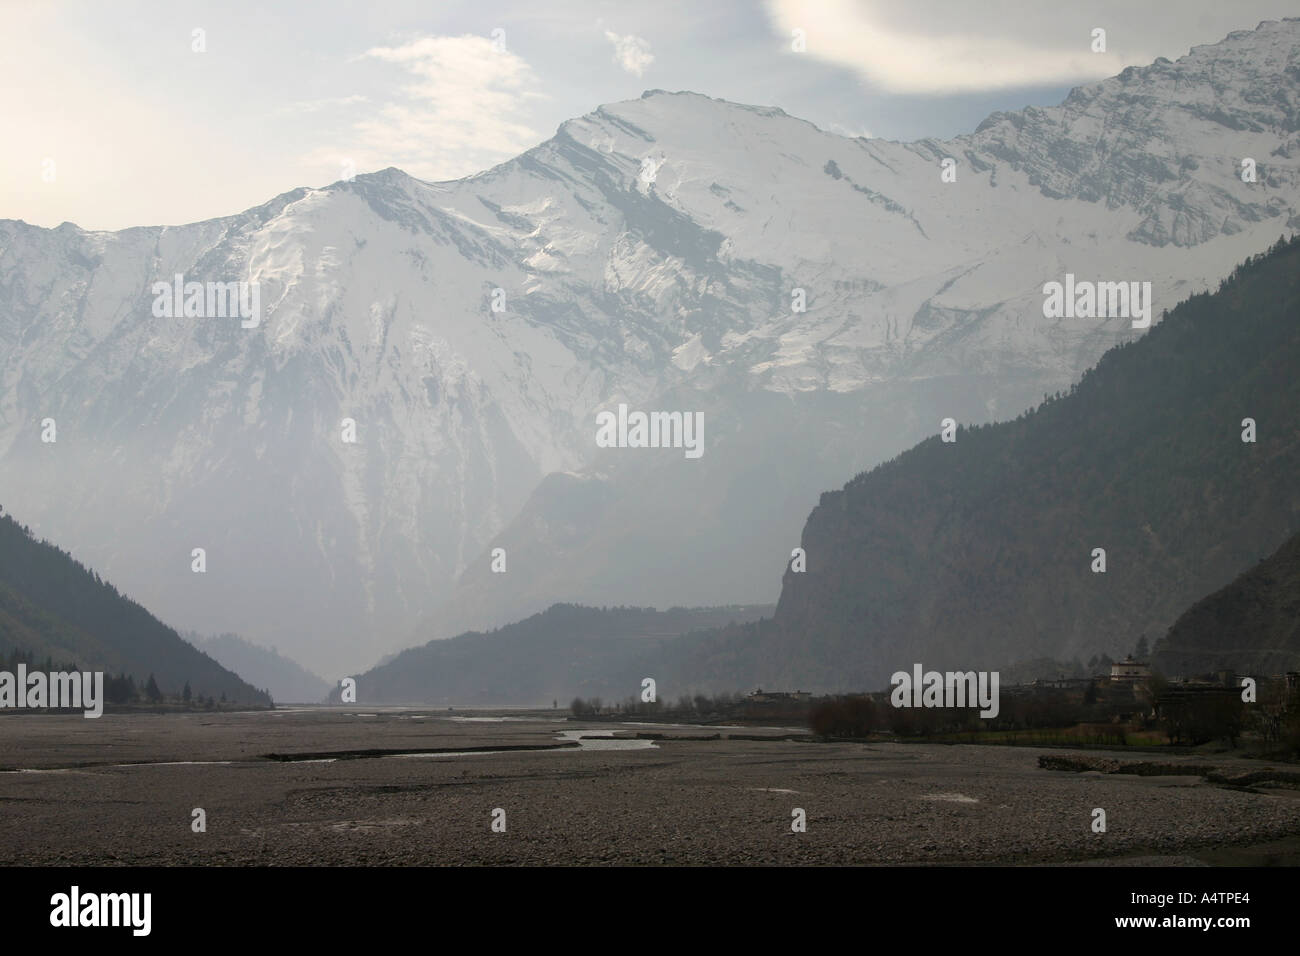 La vallée de la Kali Gandaki dans la région himalayenne du bas Mustang au Népal Banque D'Images